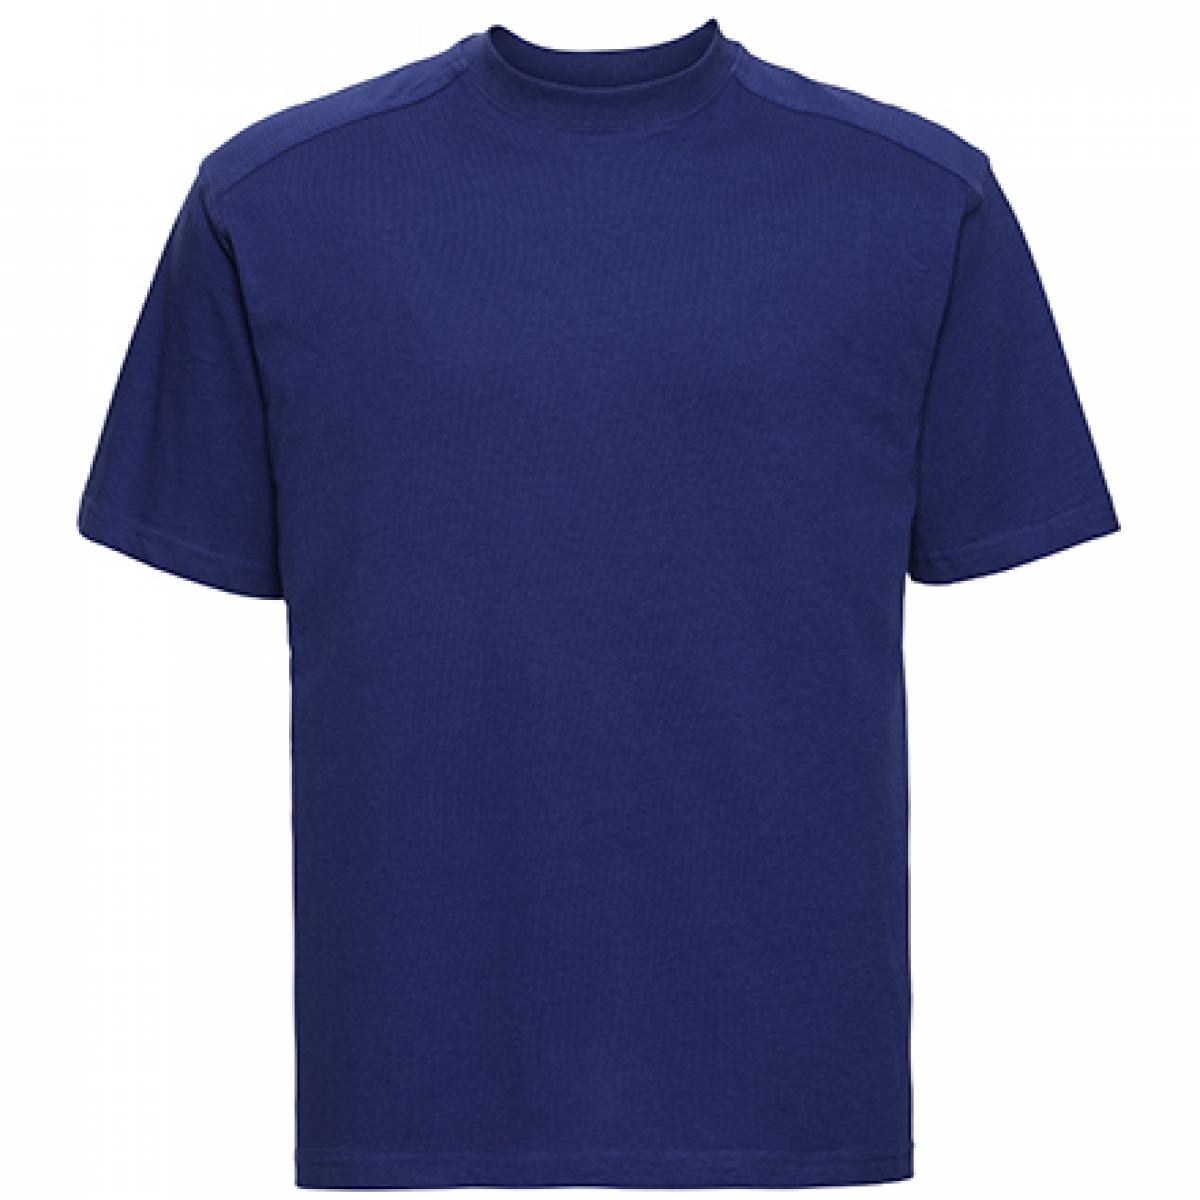 Hersteller: Russell Herstellernummer: R-010M-0 Artikelbezeichnung: Workwear Herren T-Shirt - Waschbar bis 60 °C -  bis 4XL Farbe: Bright Royal